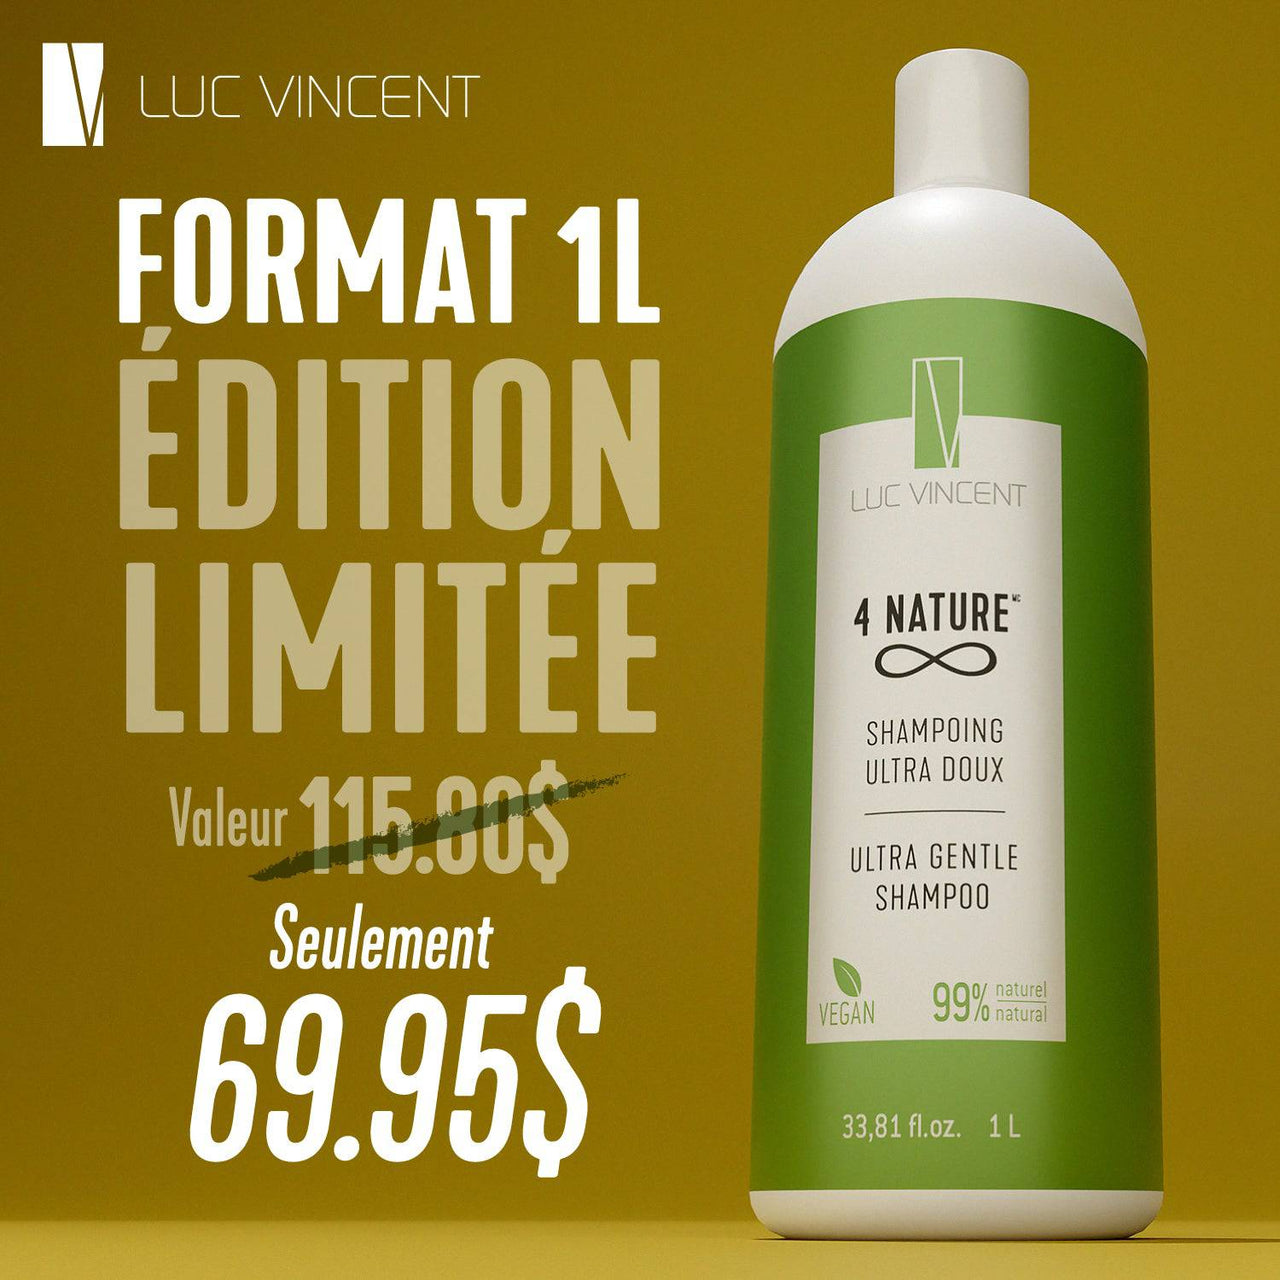 Édition limitée 1L - 4 NATURE - Shampoing VEGAN idéal pour cheveux colorés - Luc Vincent